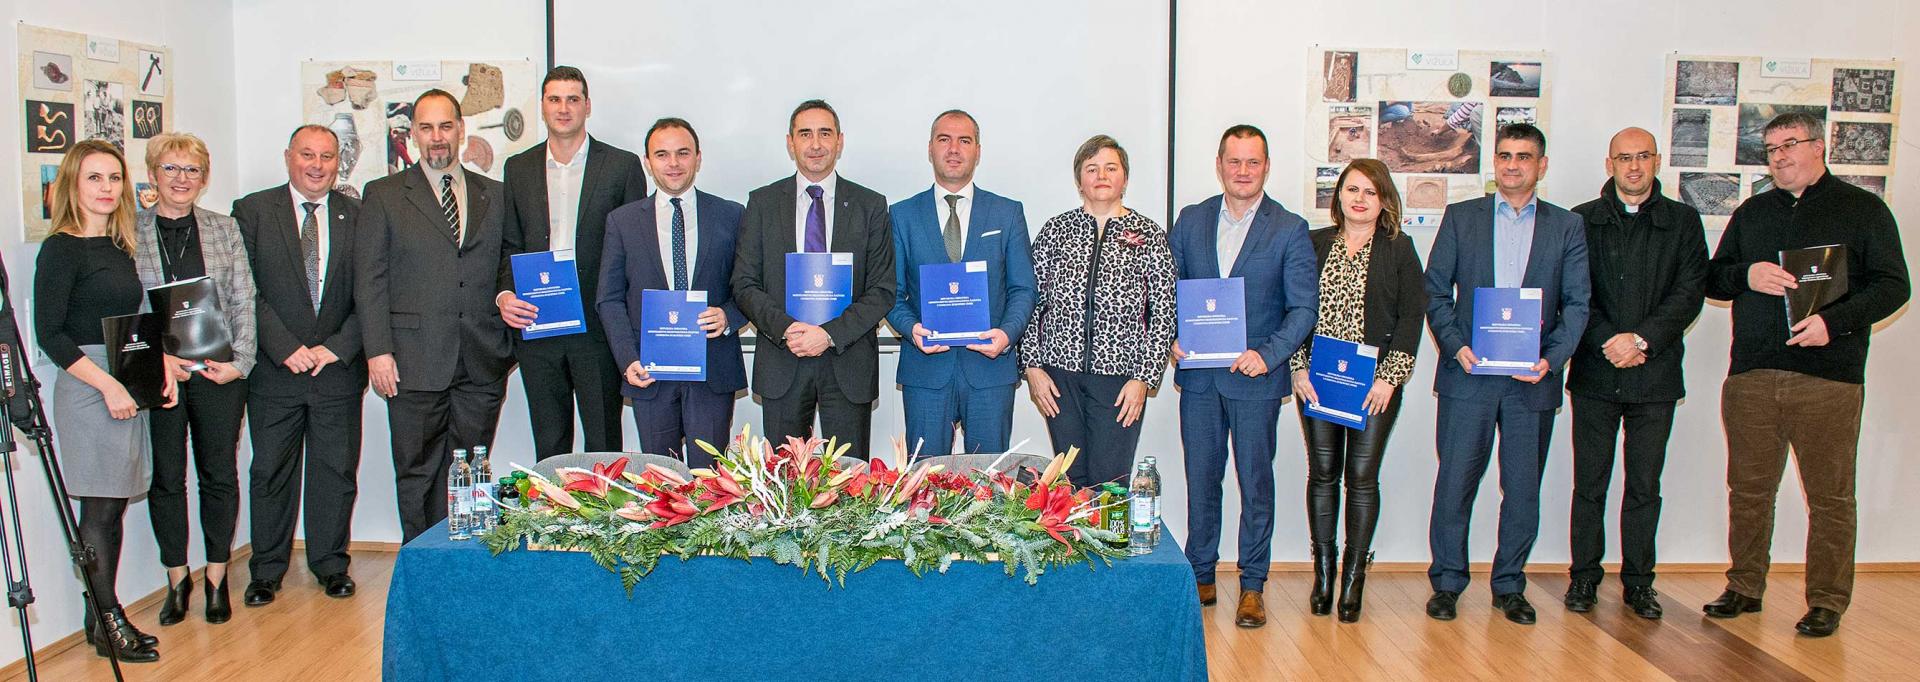 U medulinskom Multimedijalnom centru održano svečano potpisivanje Ugovora između Ministarstva regionalnog razvoja i fondova Europske unije i jedinica lokalne samouprave sa područja Istarske županije